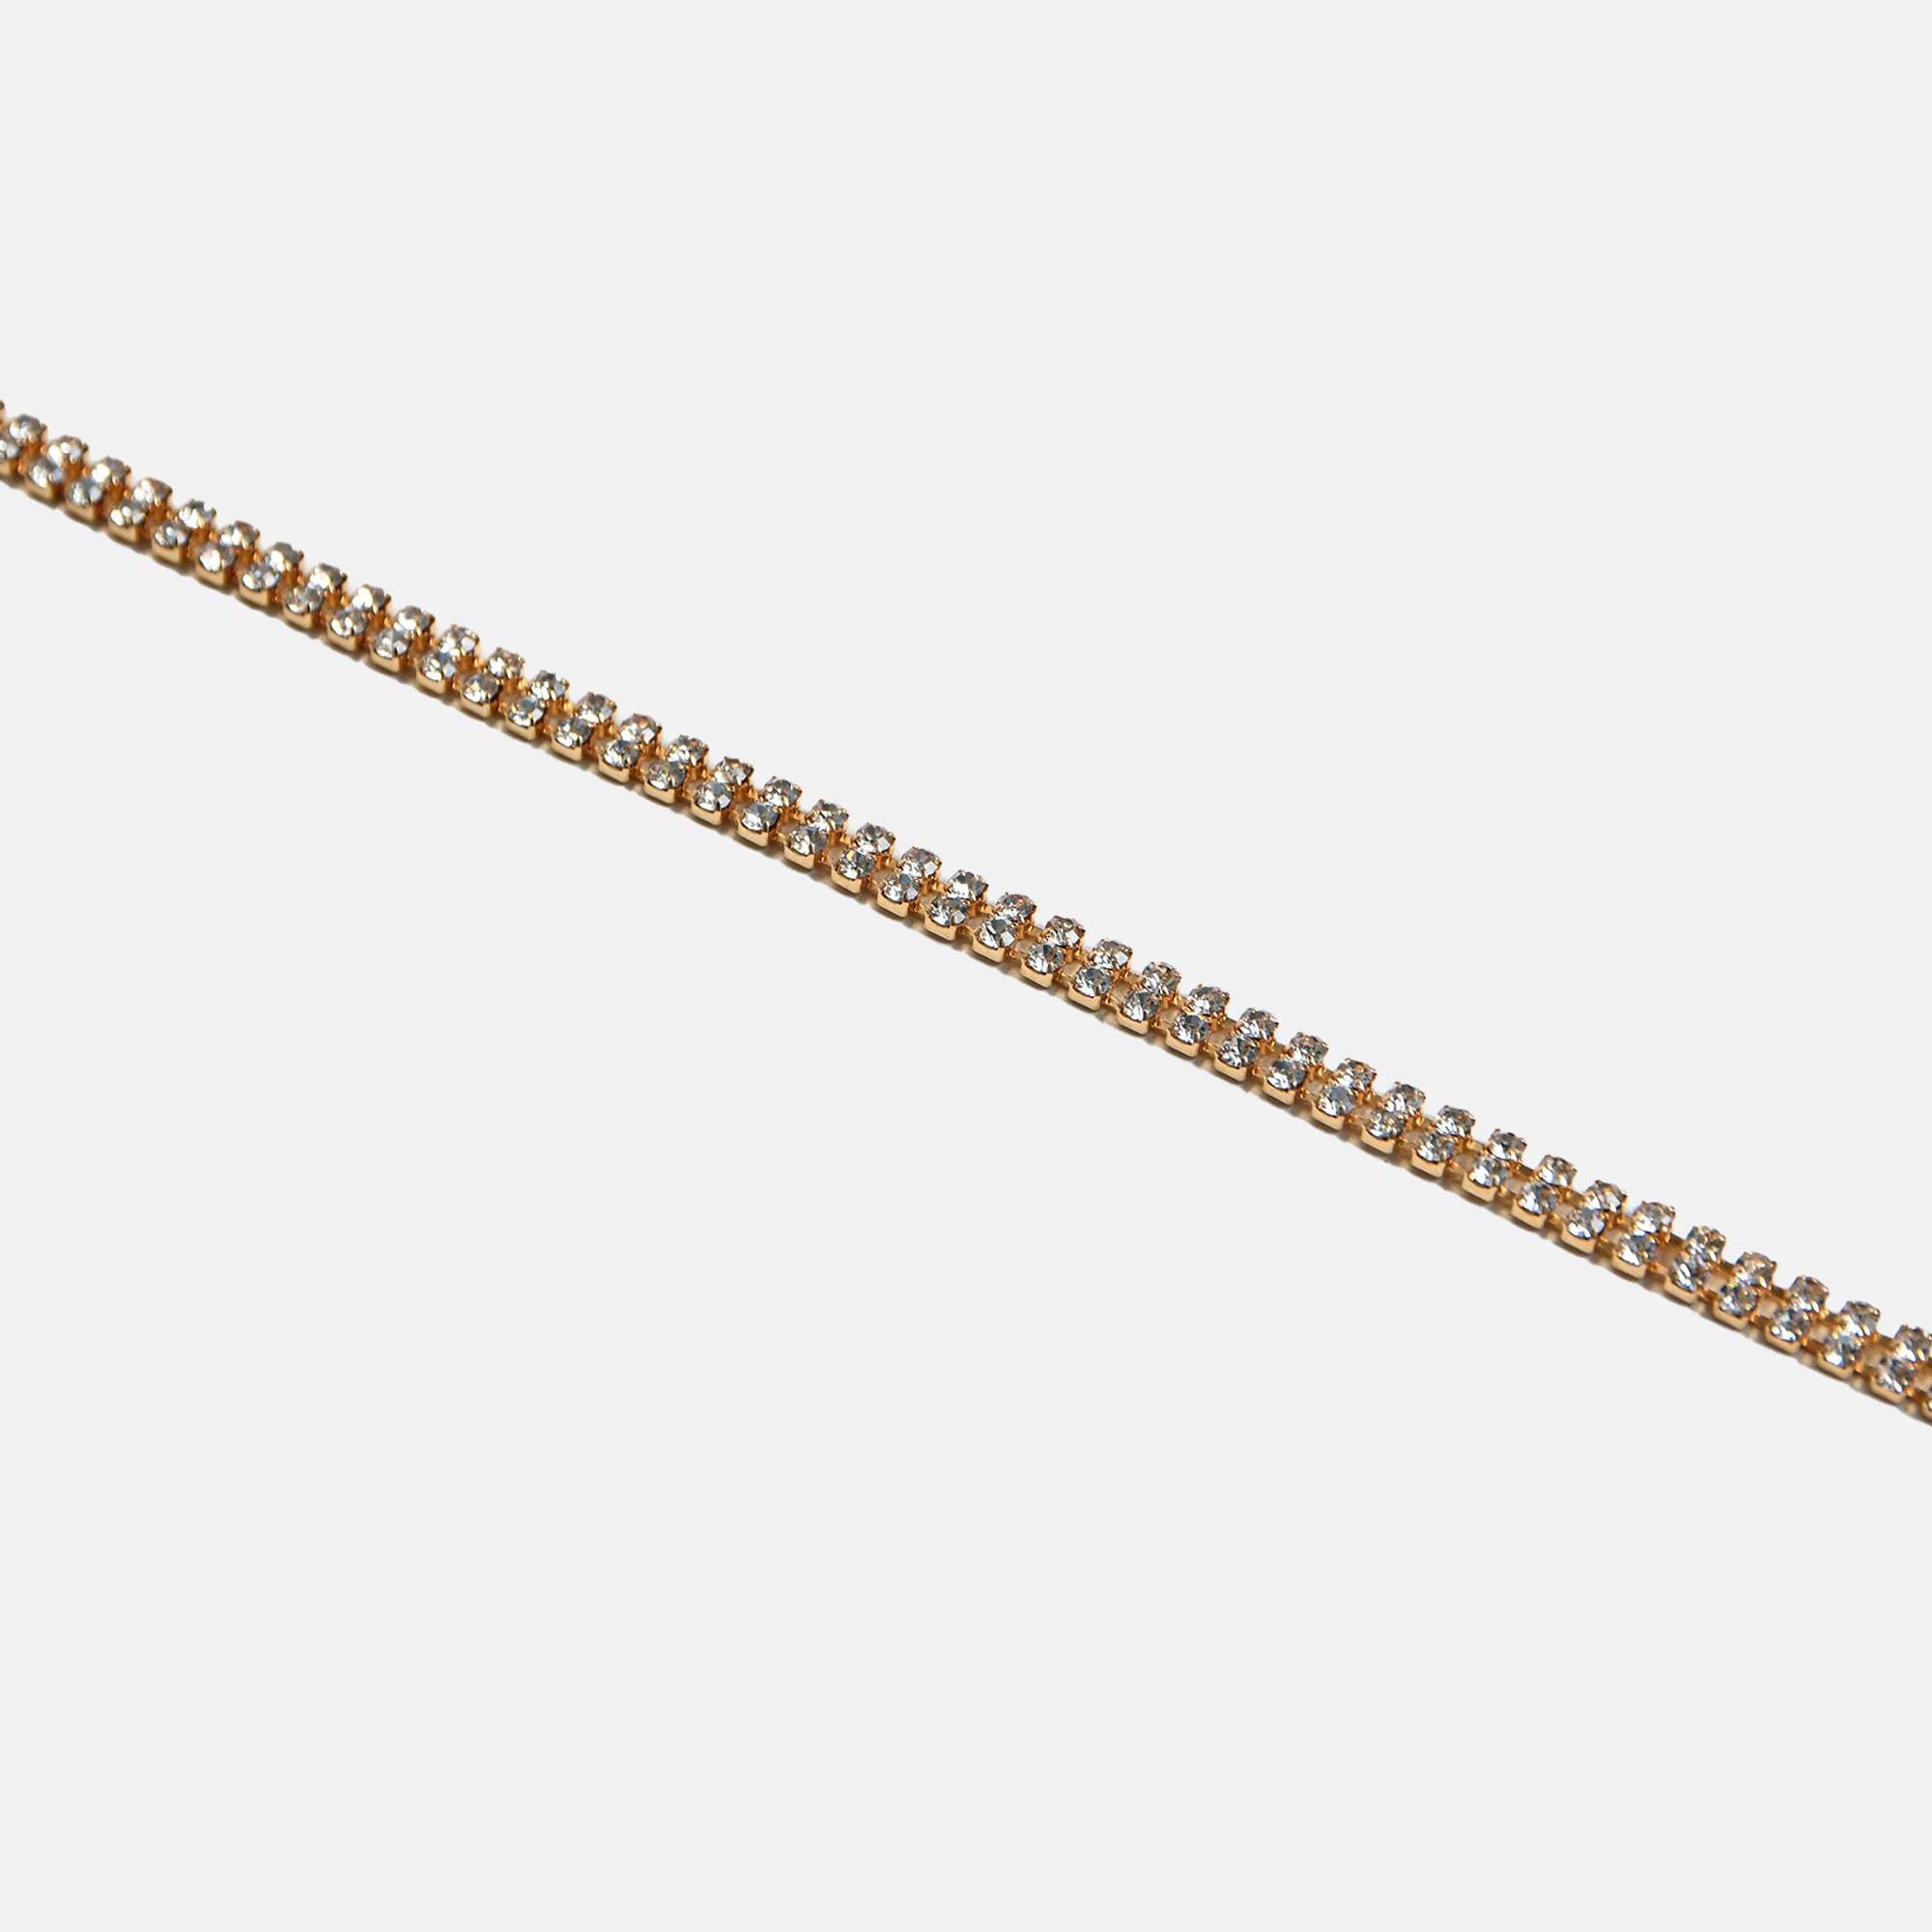 Golden bracelet with rows of zircons